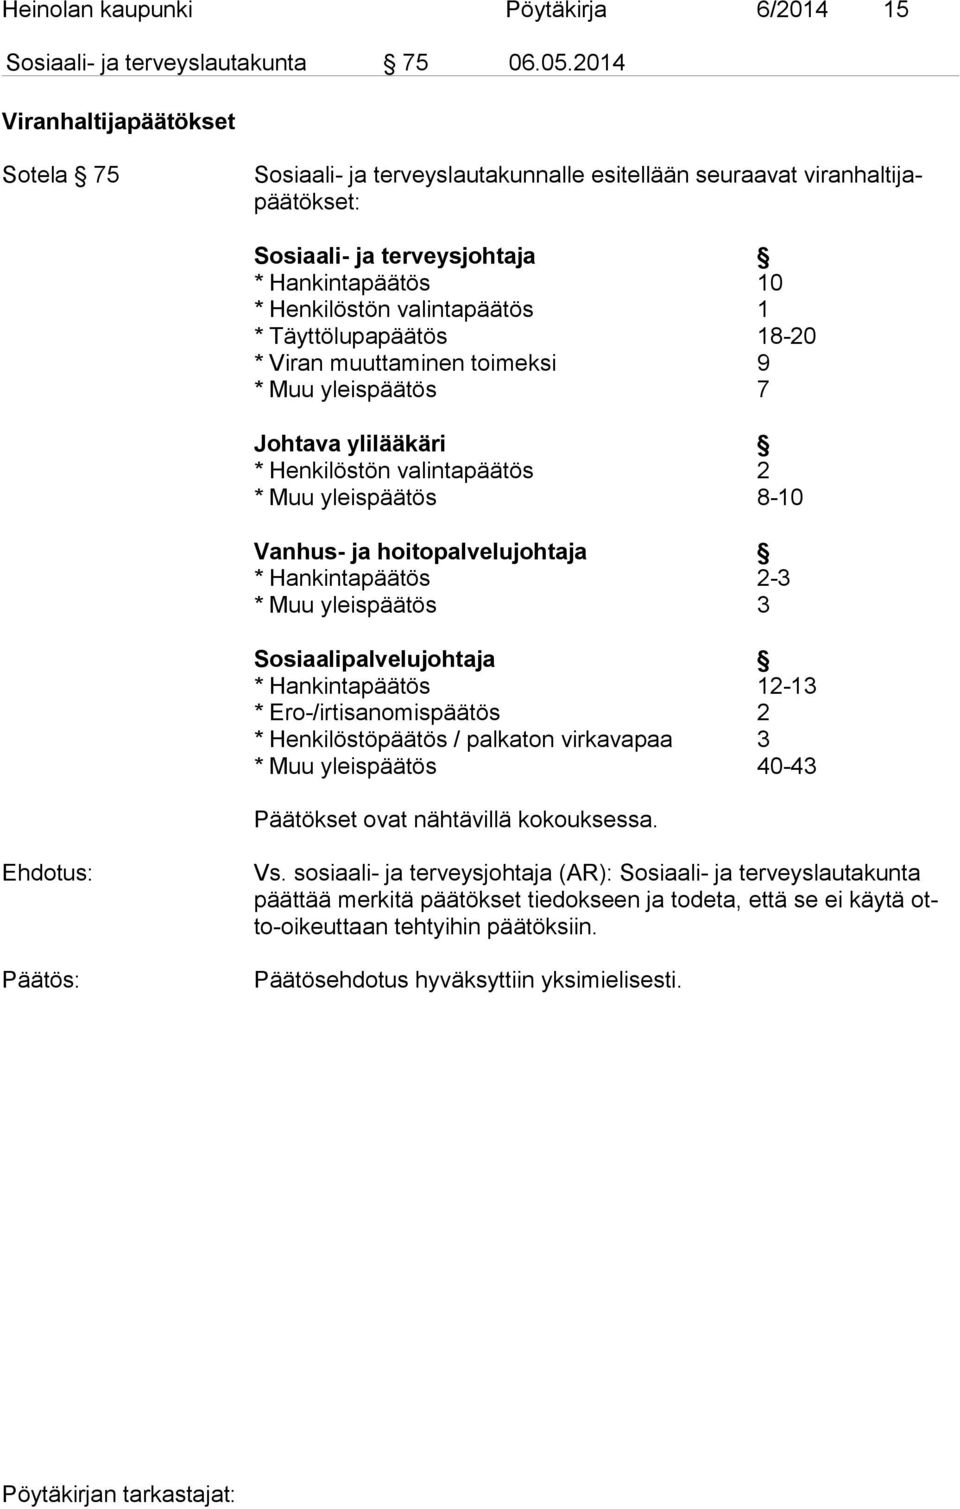 Täyttölupapäätös 18-20 * Viran muuttaminen toimeksi 9 * Muu yleispäätös 7 Johtava ylilääkäri * Henkilöstön valintapäätös 2 * Muu yleispäätös 8-10 Vanhus- ja hoitopalvelujohtaja * Hankintapäätös